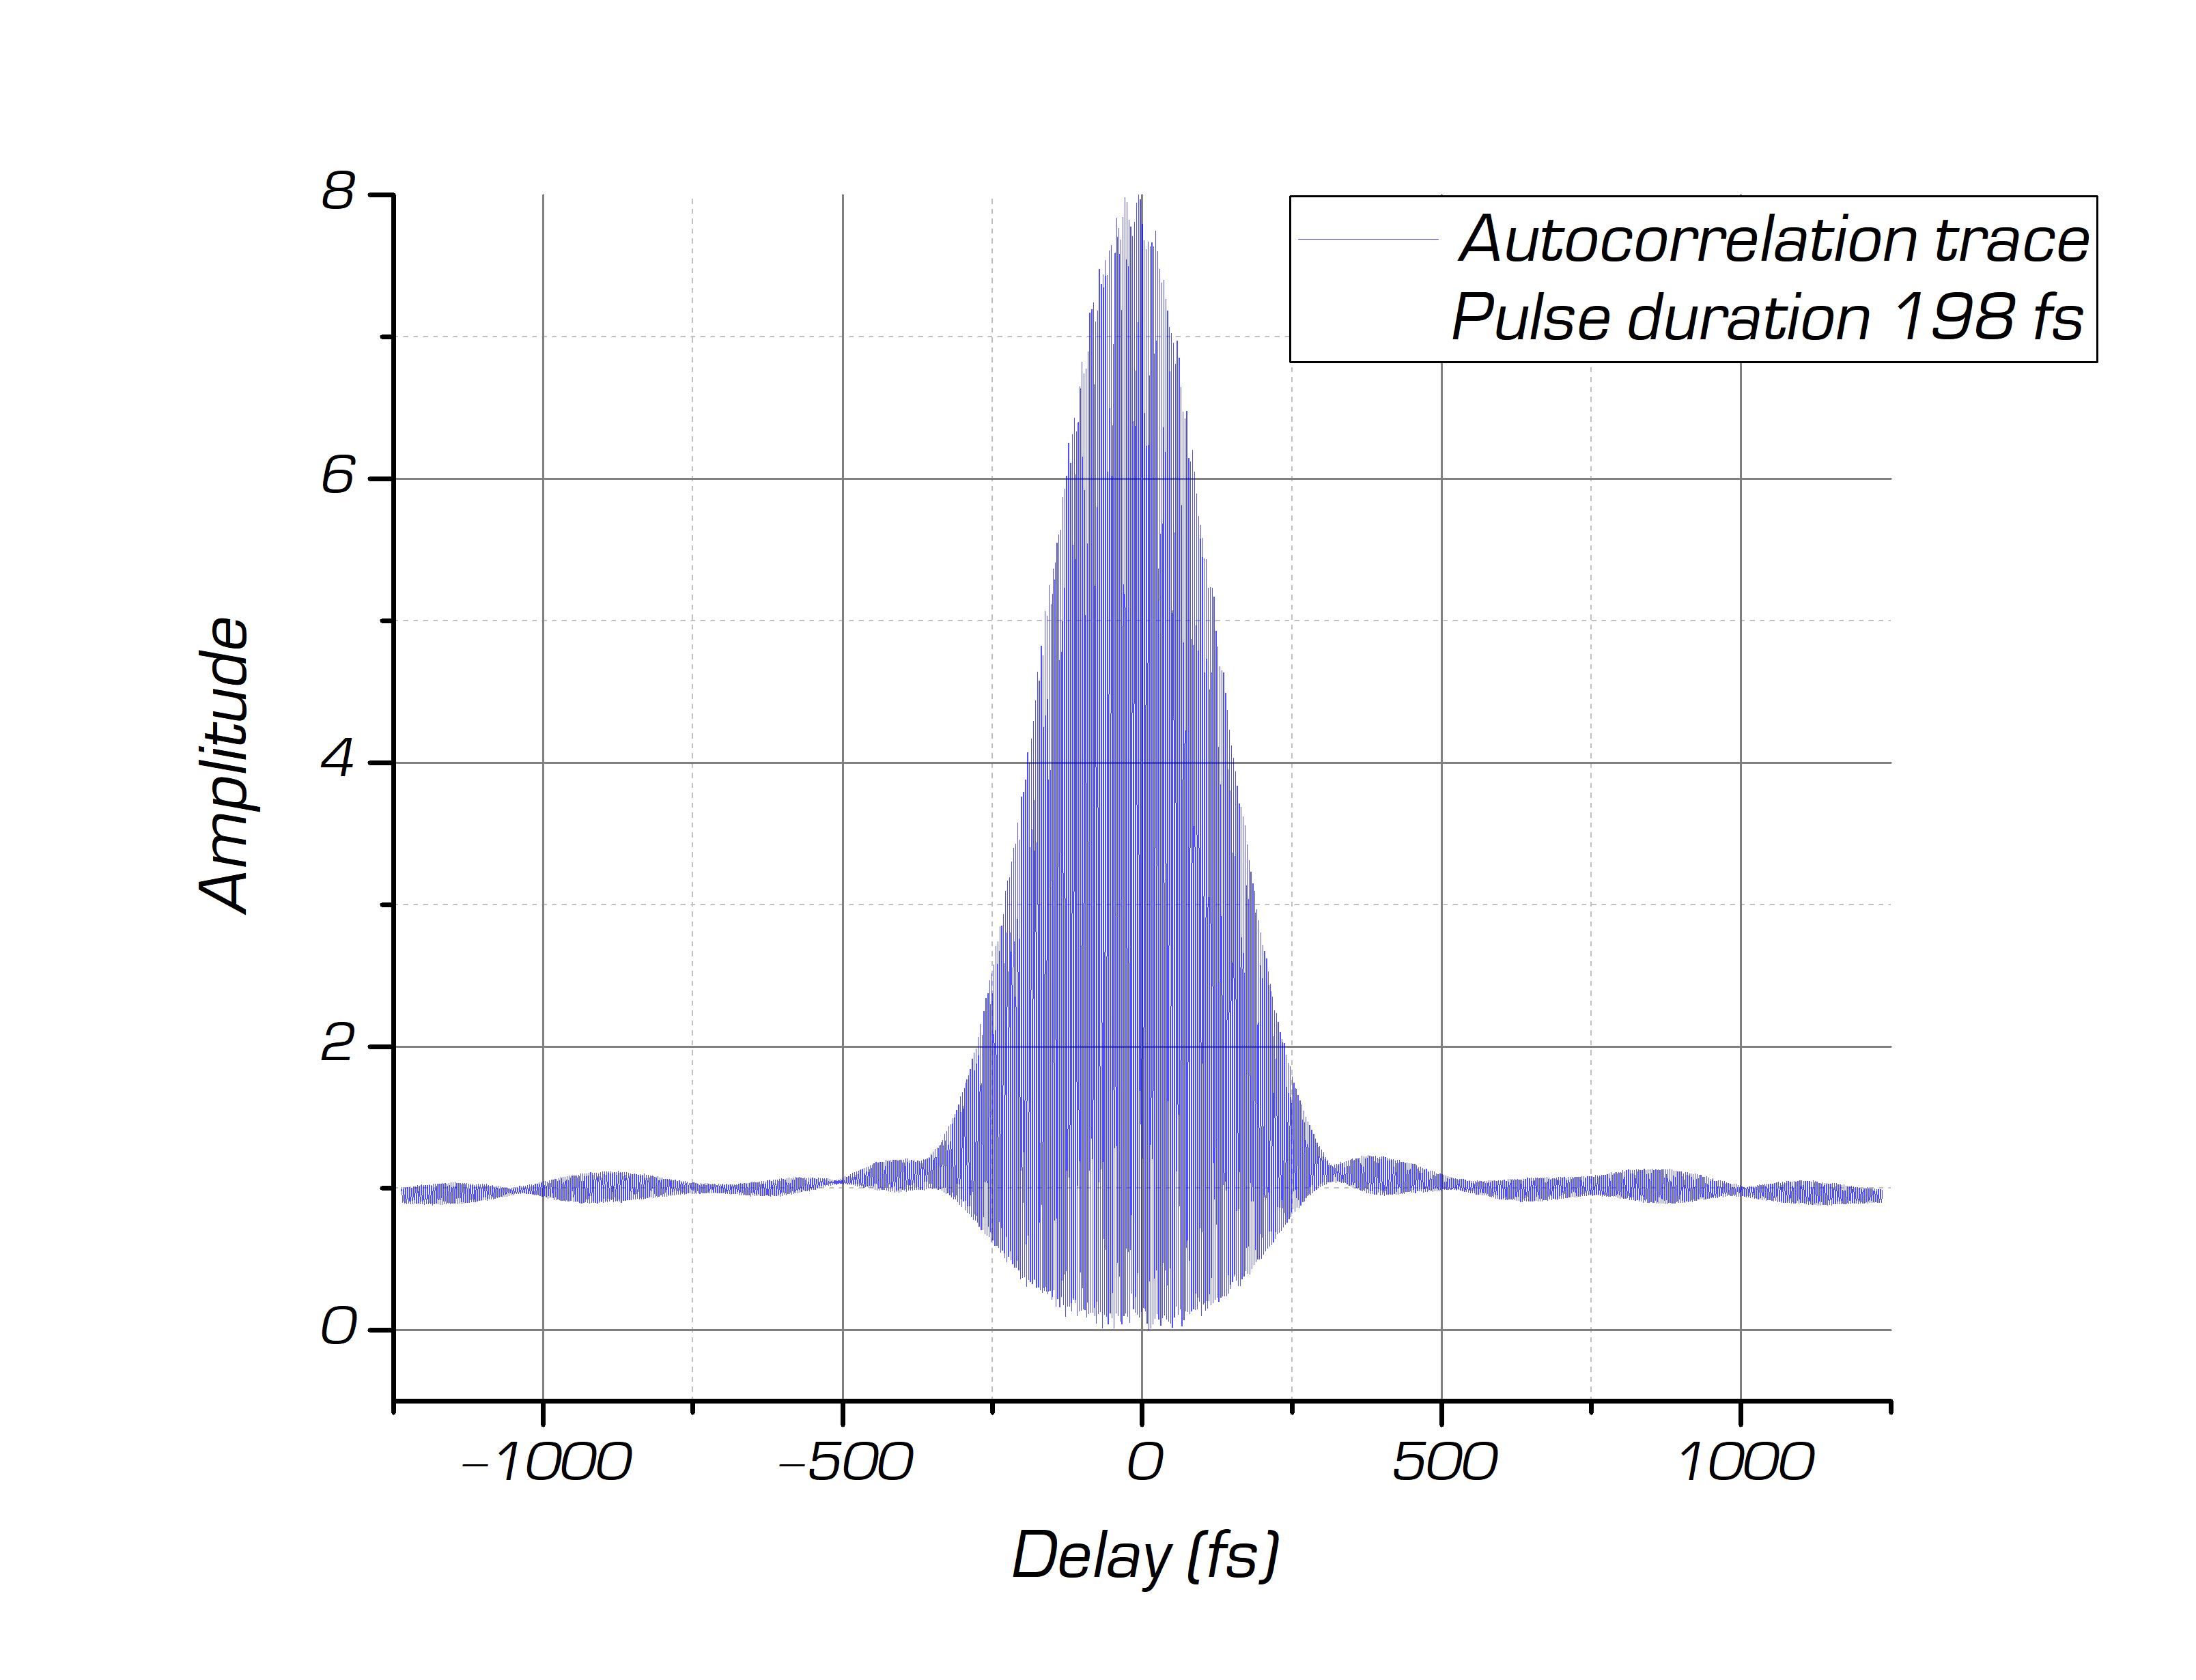 Автокорреляционная функция ANTAUS-10W-4u/2.5M (4 мкДж, 2,5 МГц, 10 Вт, 198 фс по Гауссу)